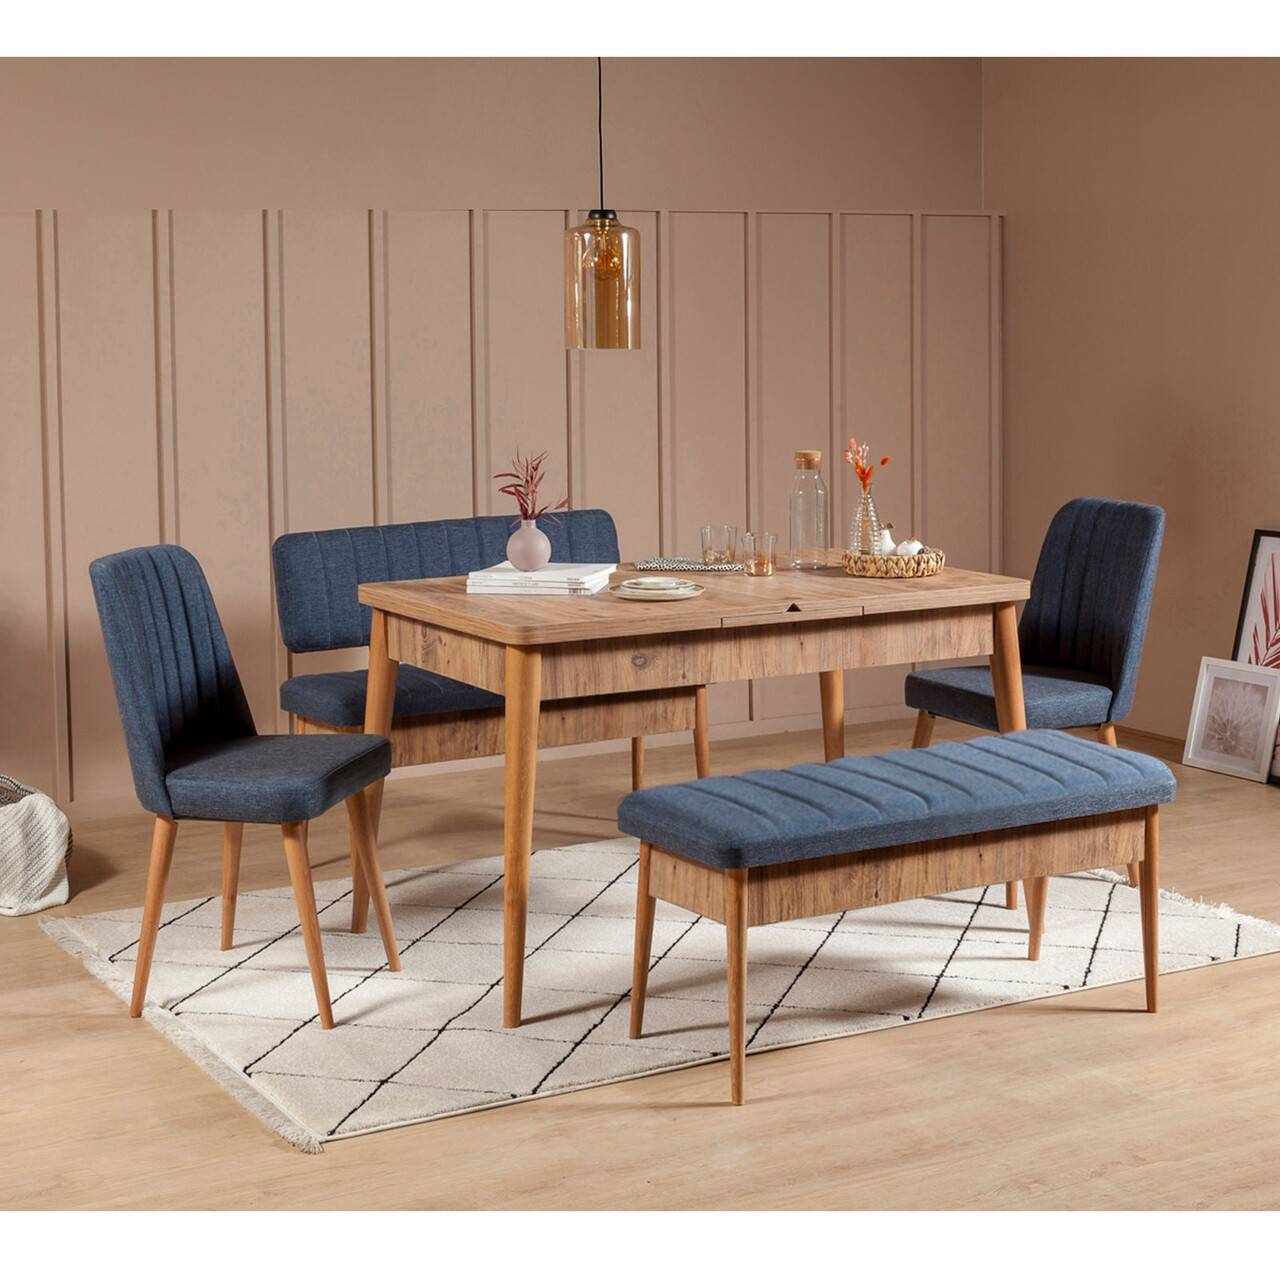 Set di tavolo allungabile, 2 sedie, panca e seduta Malva Legno chiaro e tessuto blu scuro